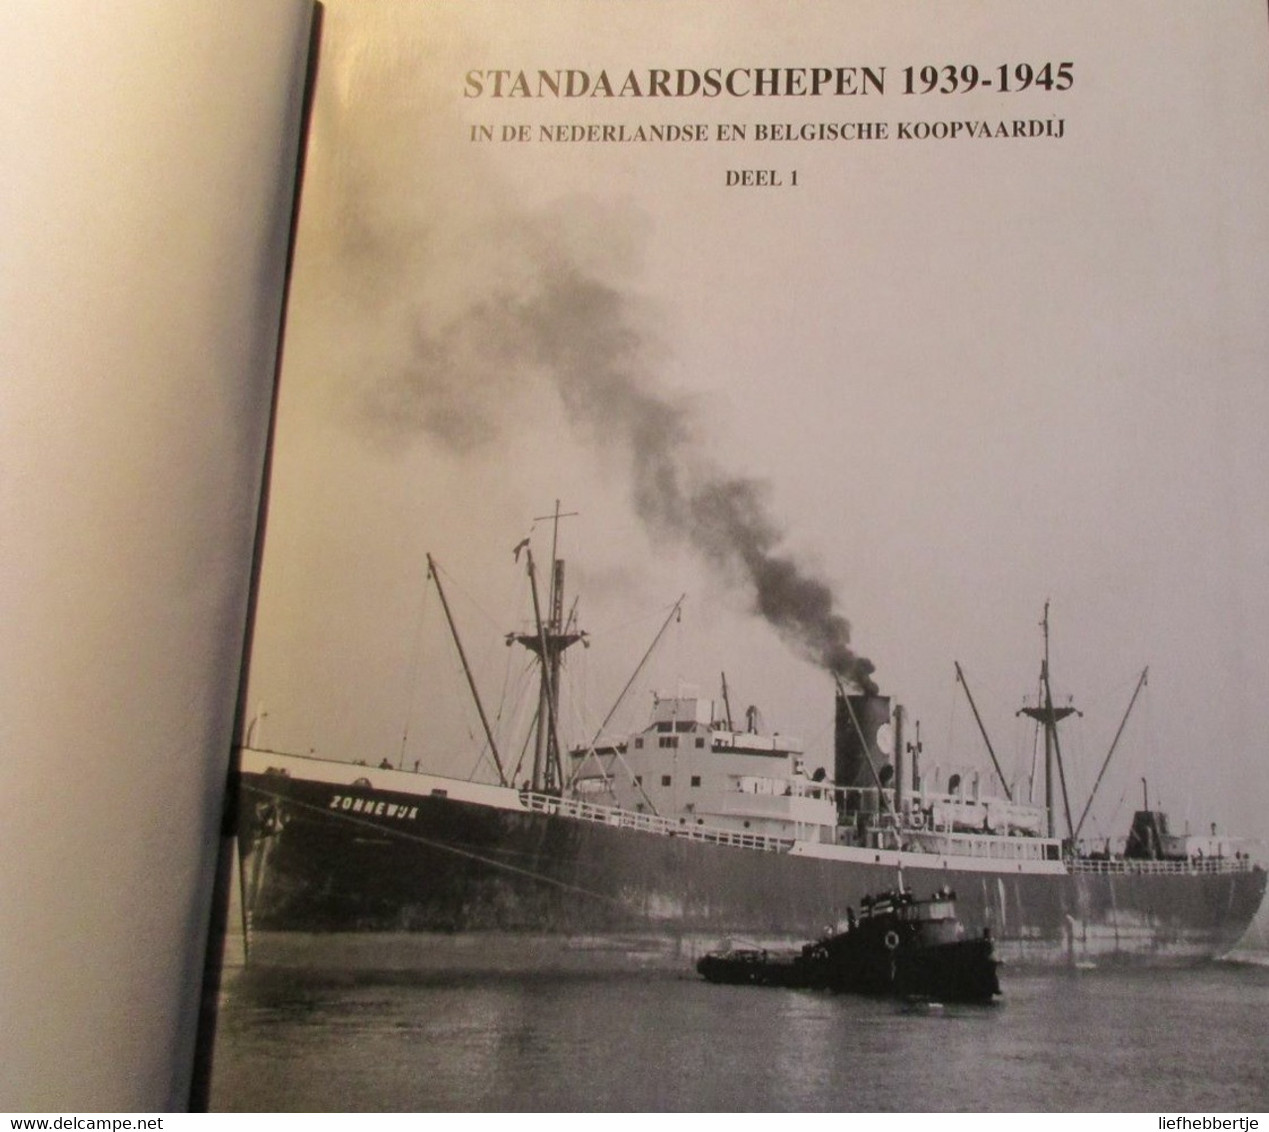 Standaardschepen 1939-1945 In De Nederlandse En Belgische Koopvaardij : Deel 1 - Door Gorter En De Boer - Geschichte